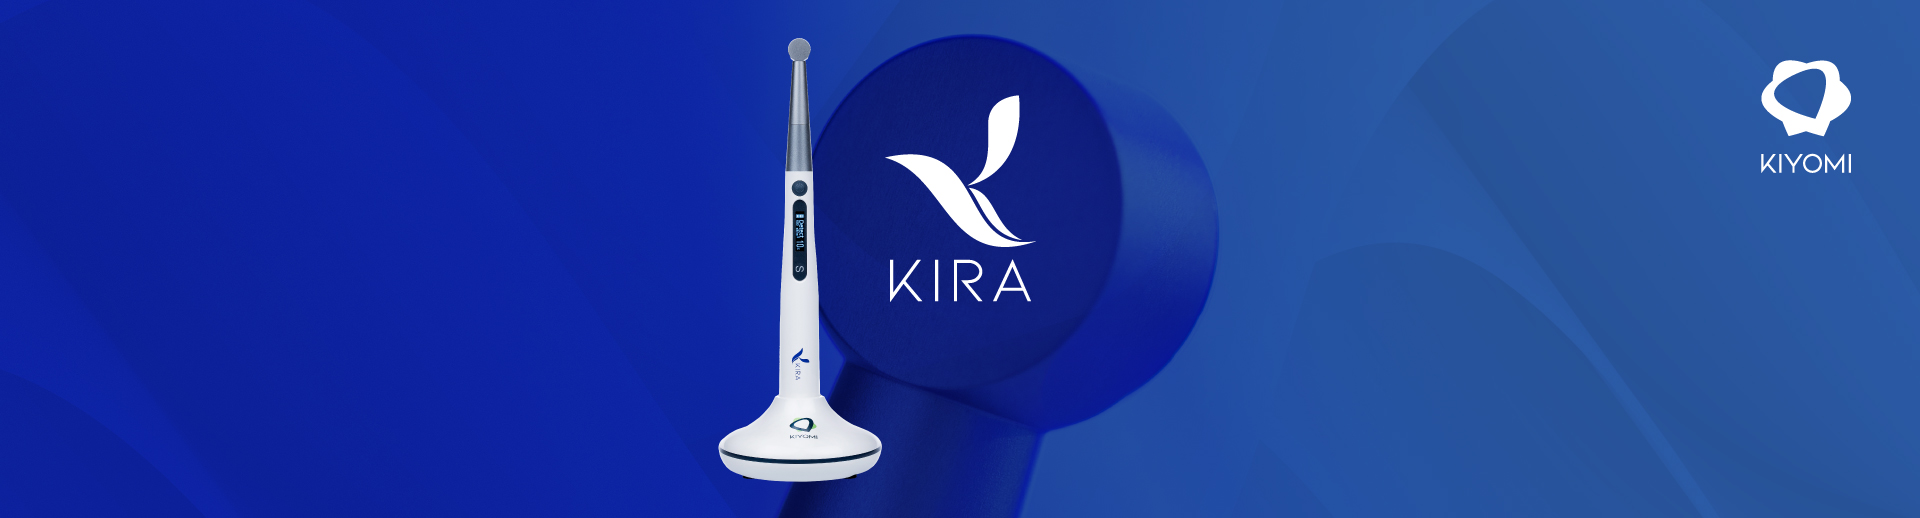 Lámpara de polimerización: todo lo que debes saber sobre KIRA